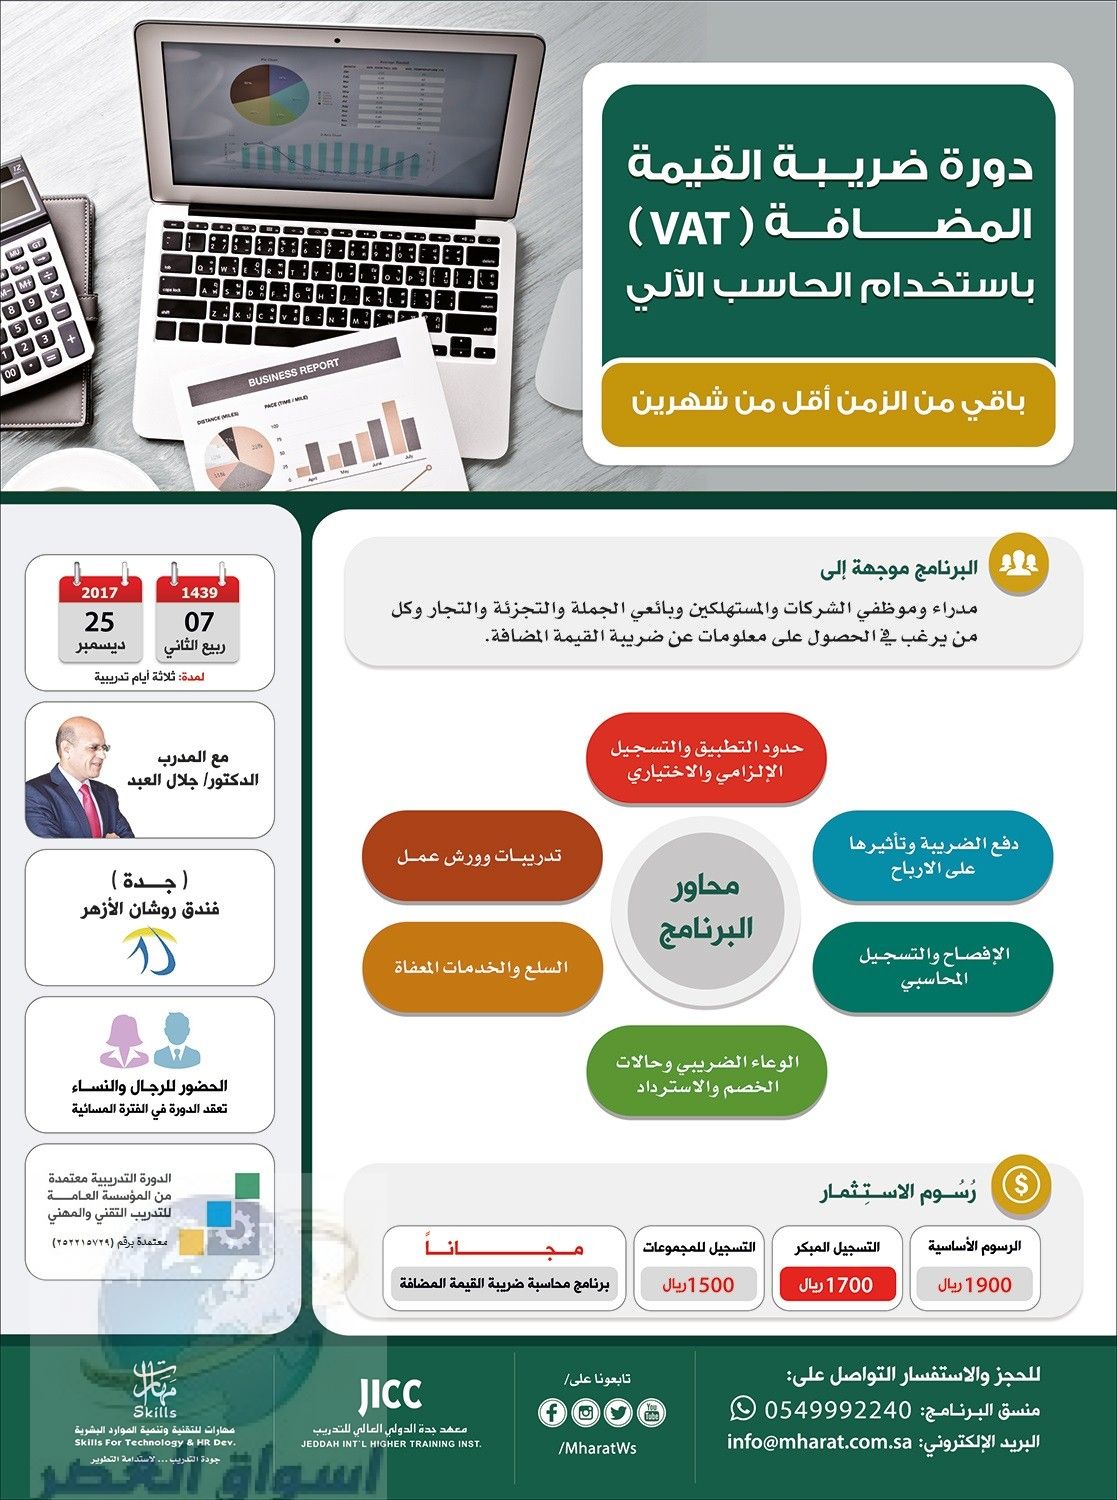 دورة ضريبة القيمة المضافة VAT مع المدرب الدكتور/ جلال العبد